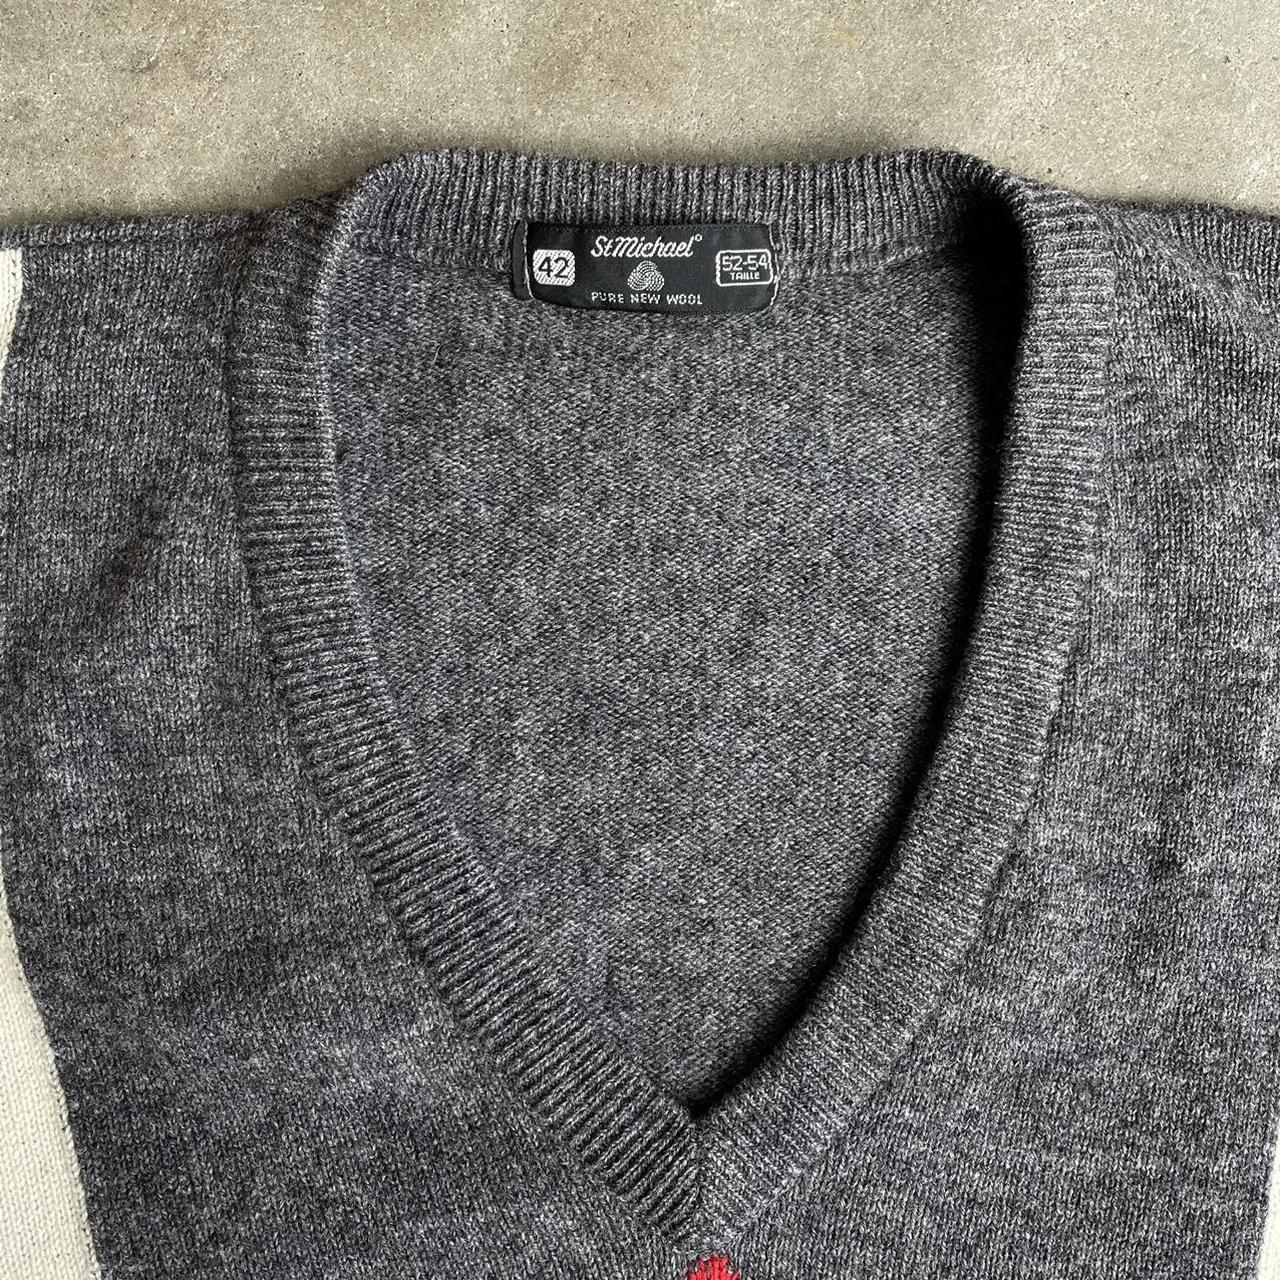 Vintage 1980s “StMichael” v neck sweater. 100% pure... - Depop